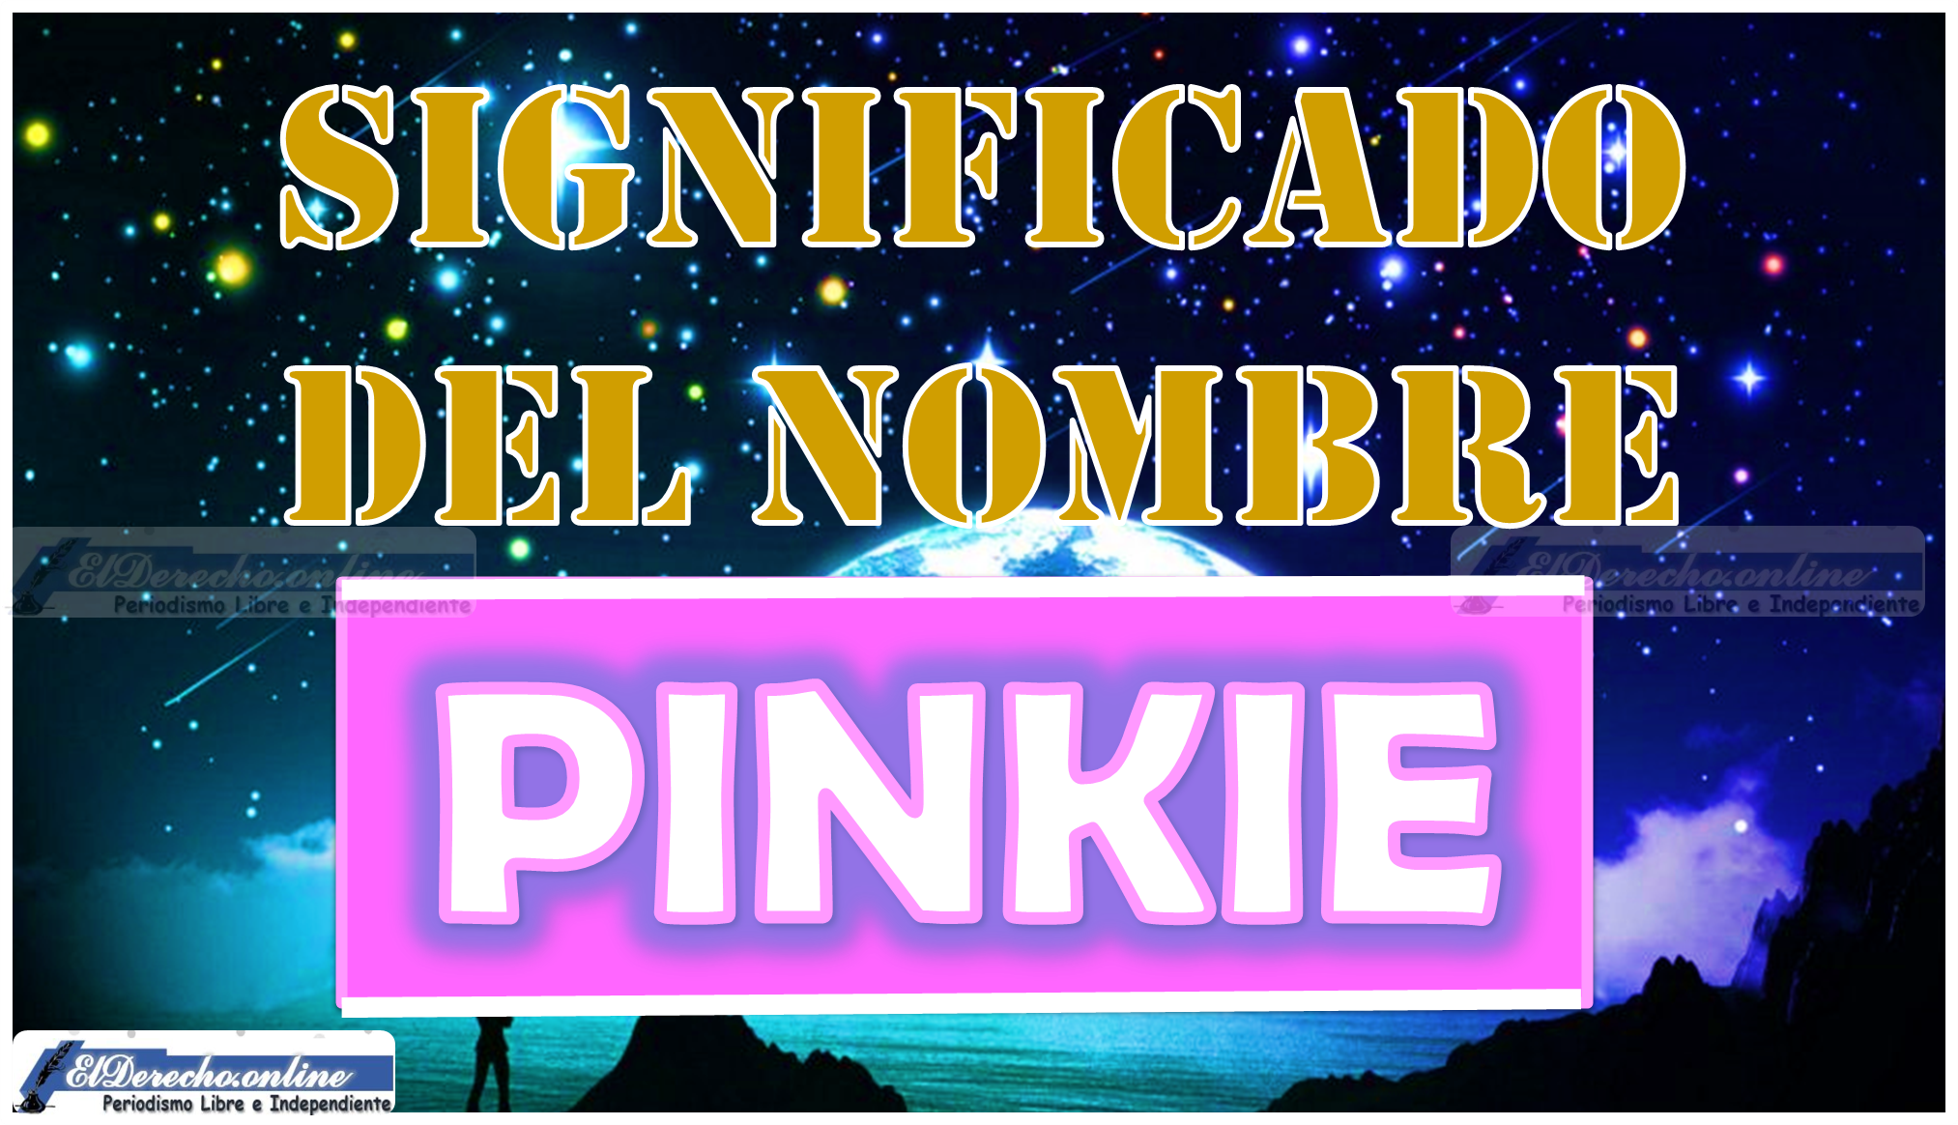 Significado del nombre Pinkie, su origen y más